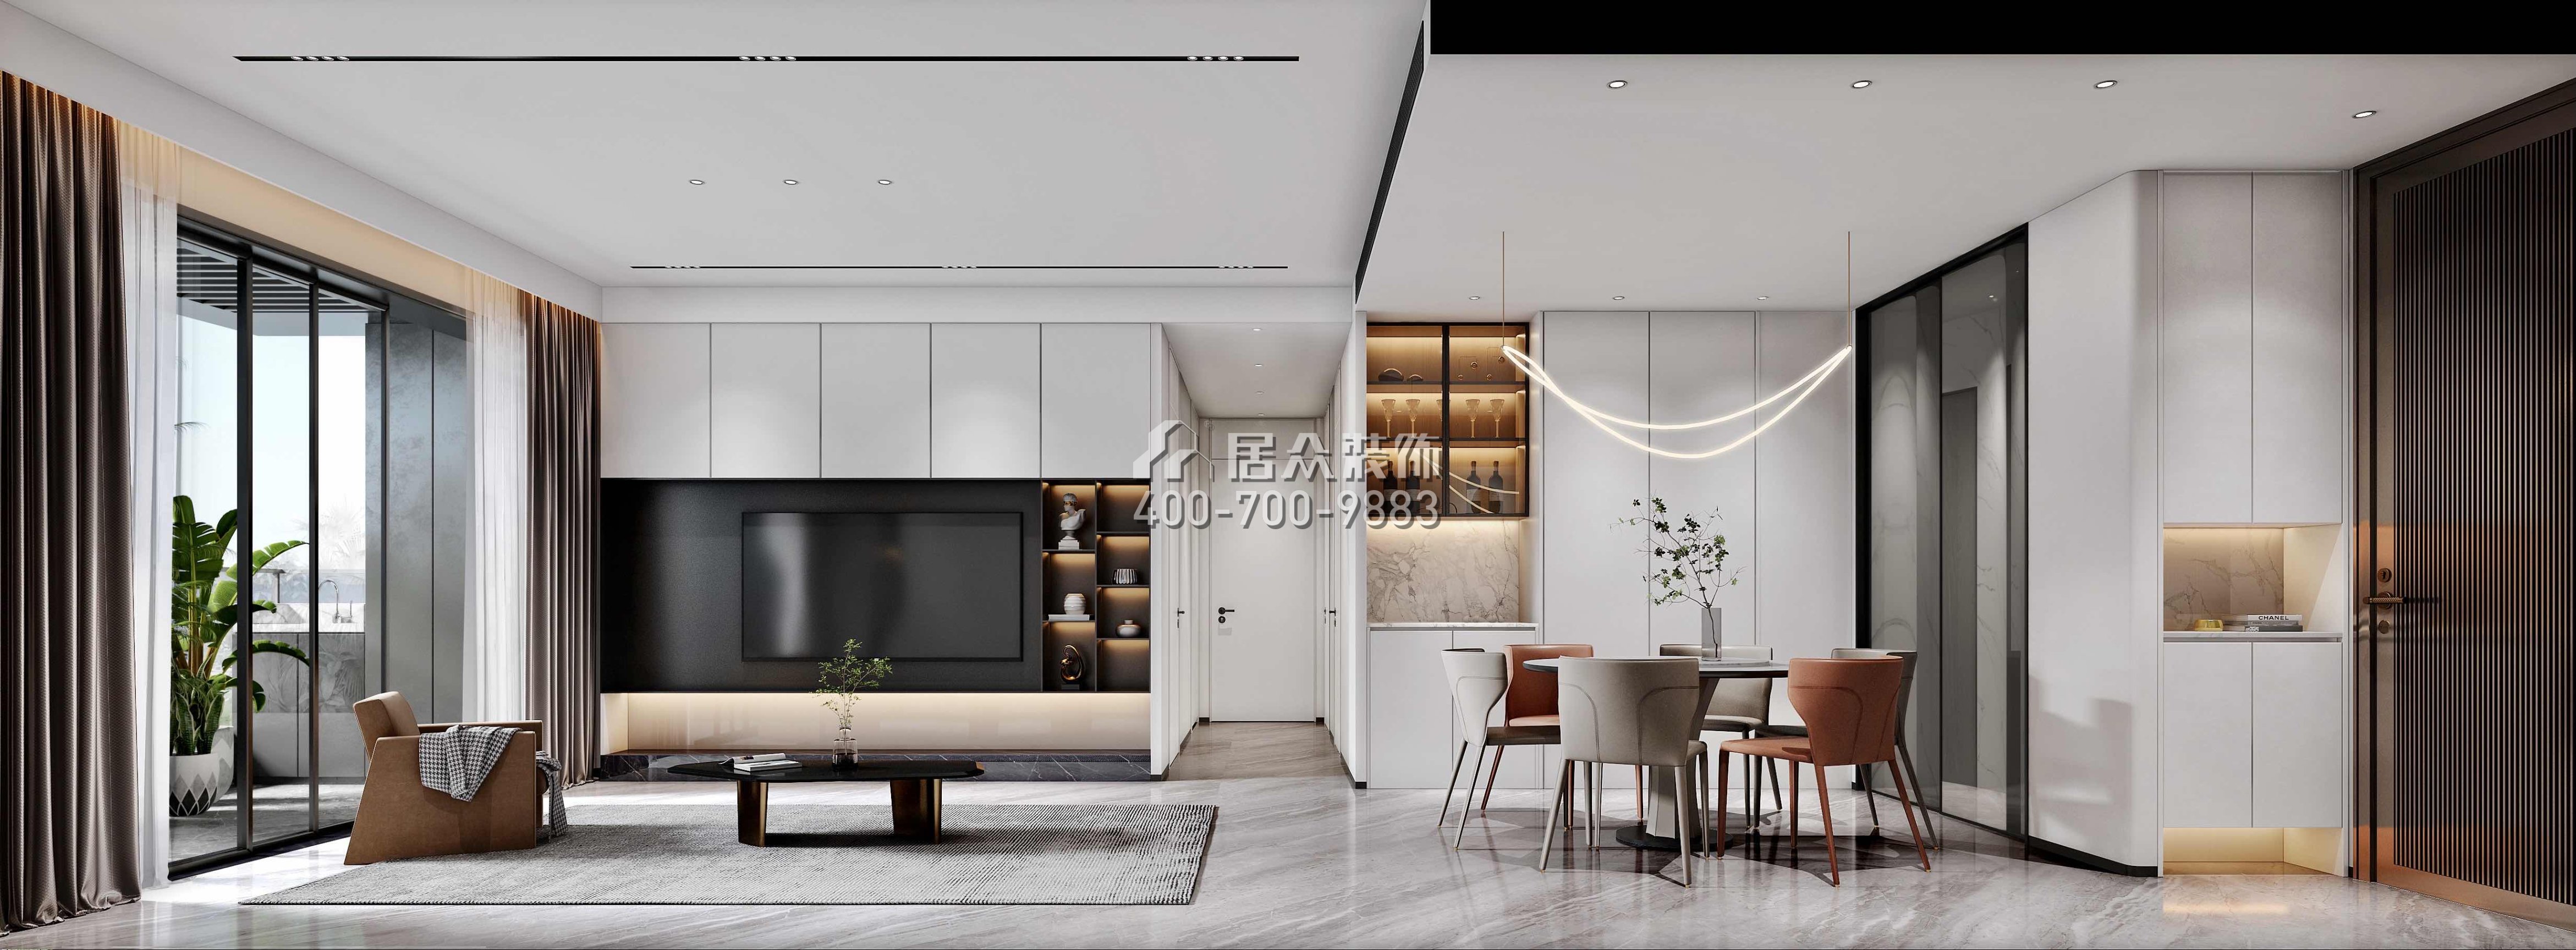 天健天骄南苑120平方米现代简约风格平层户型客厅装修效果图